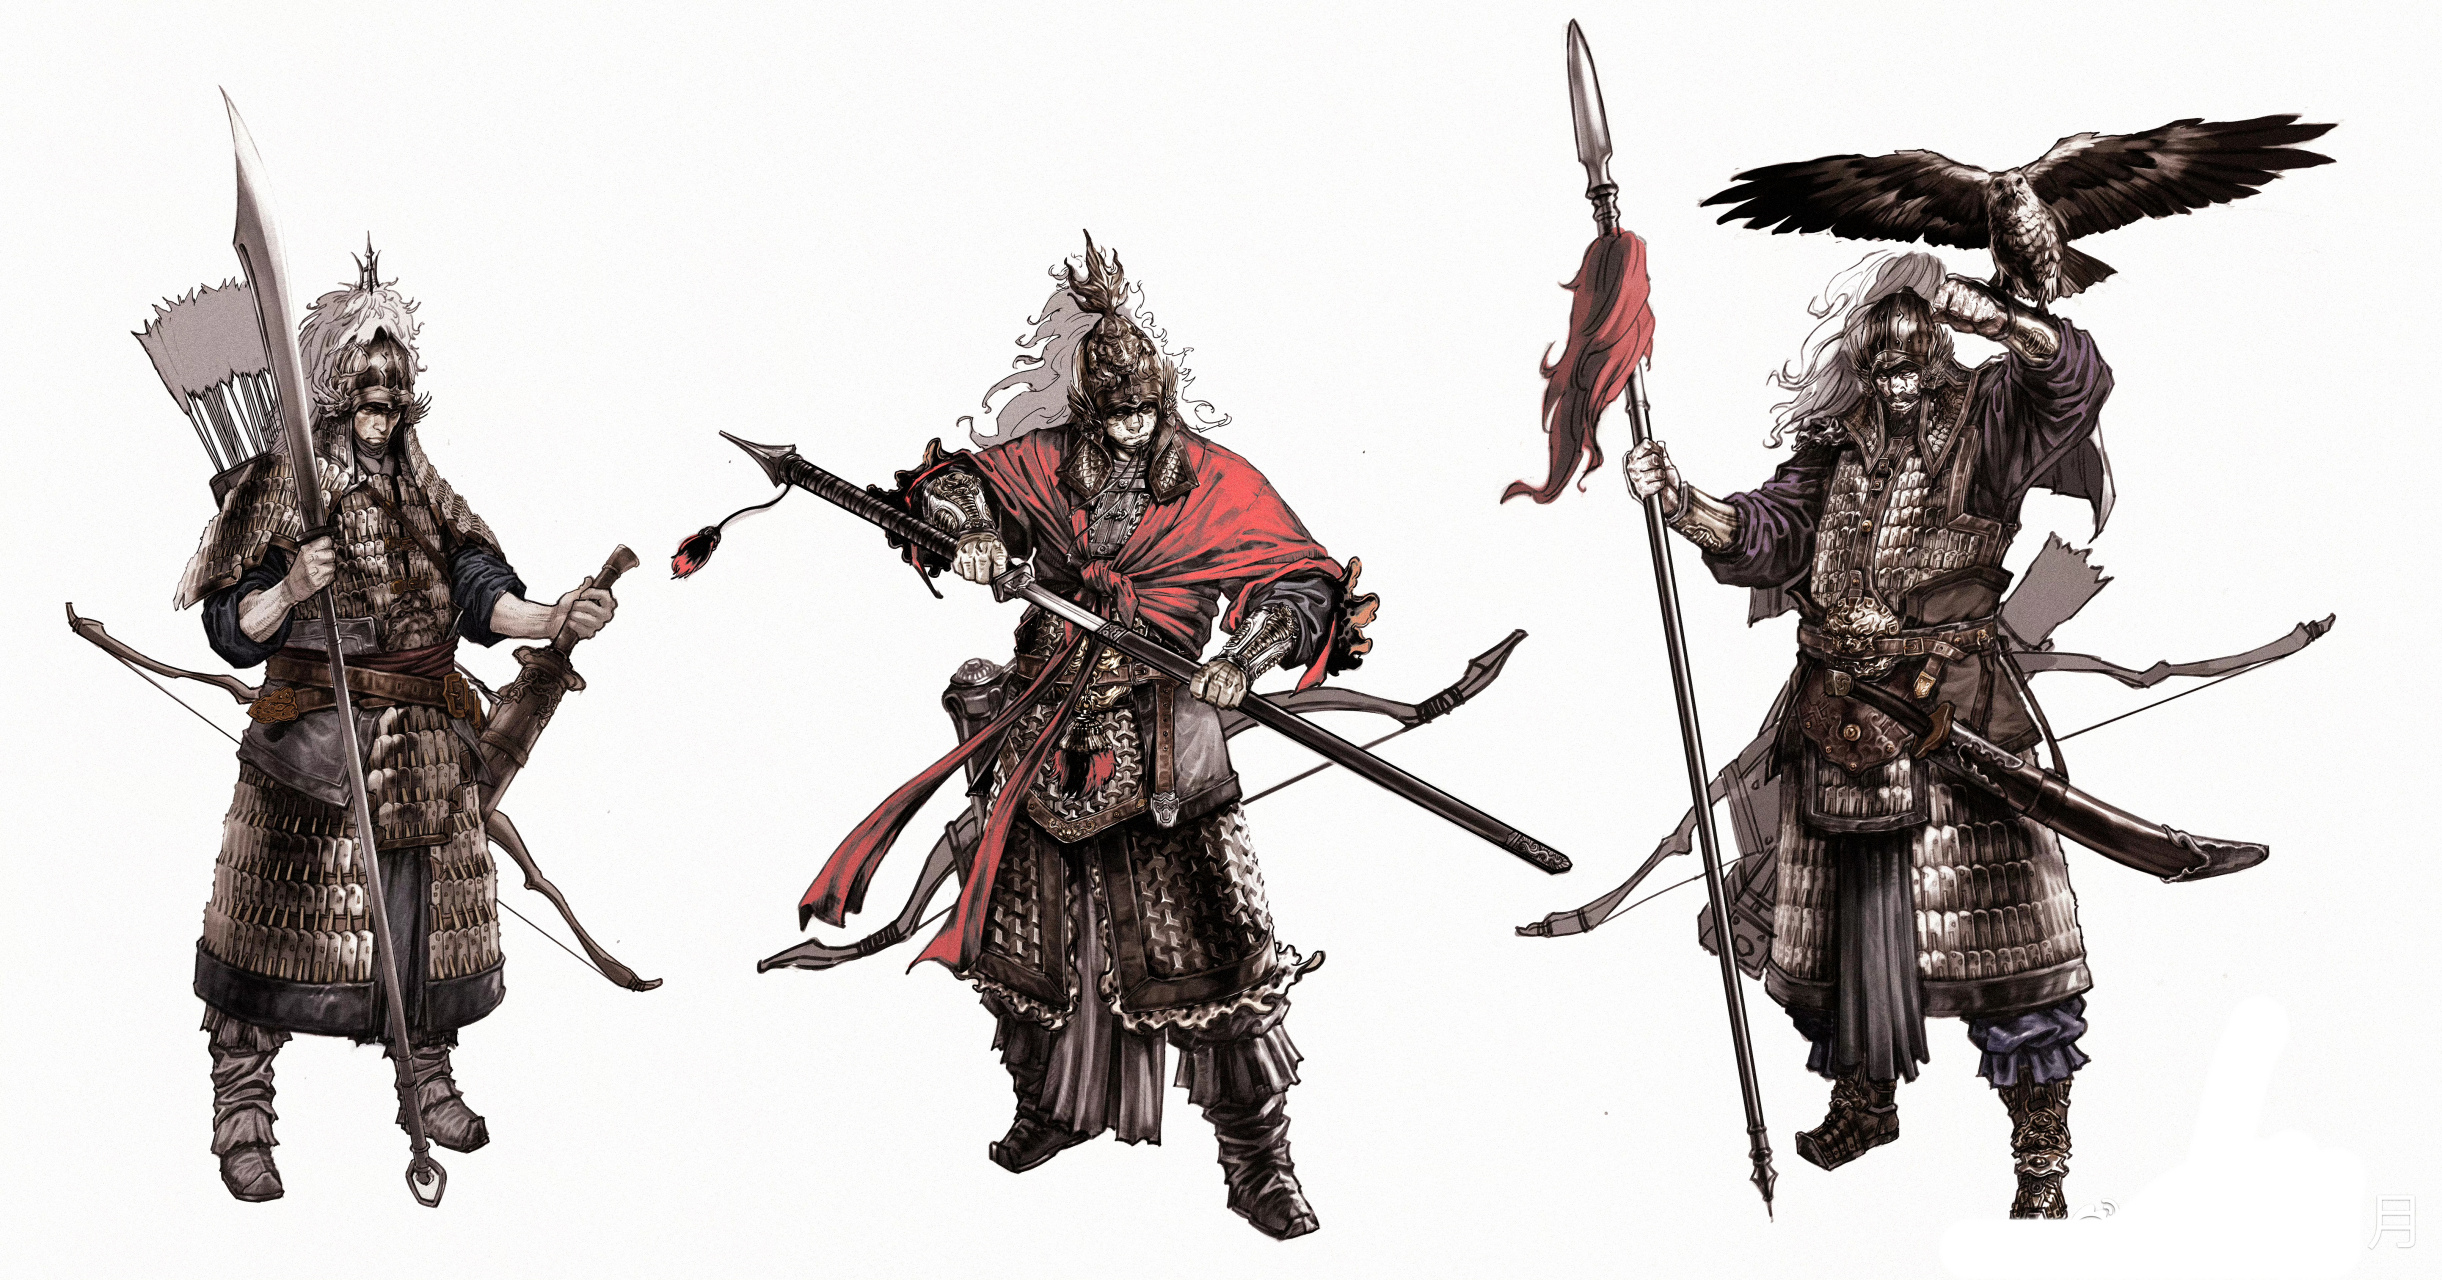 一组我国古代武士绘画作品欣赏,兵器与盔甲绘制十分考究,by 异客岁月